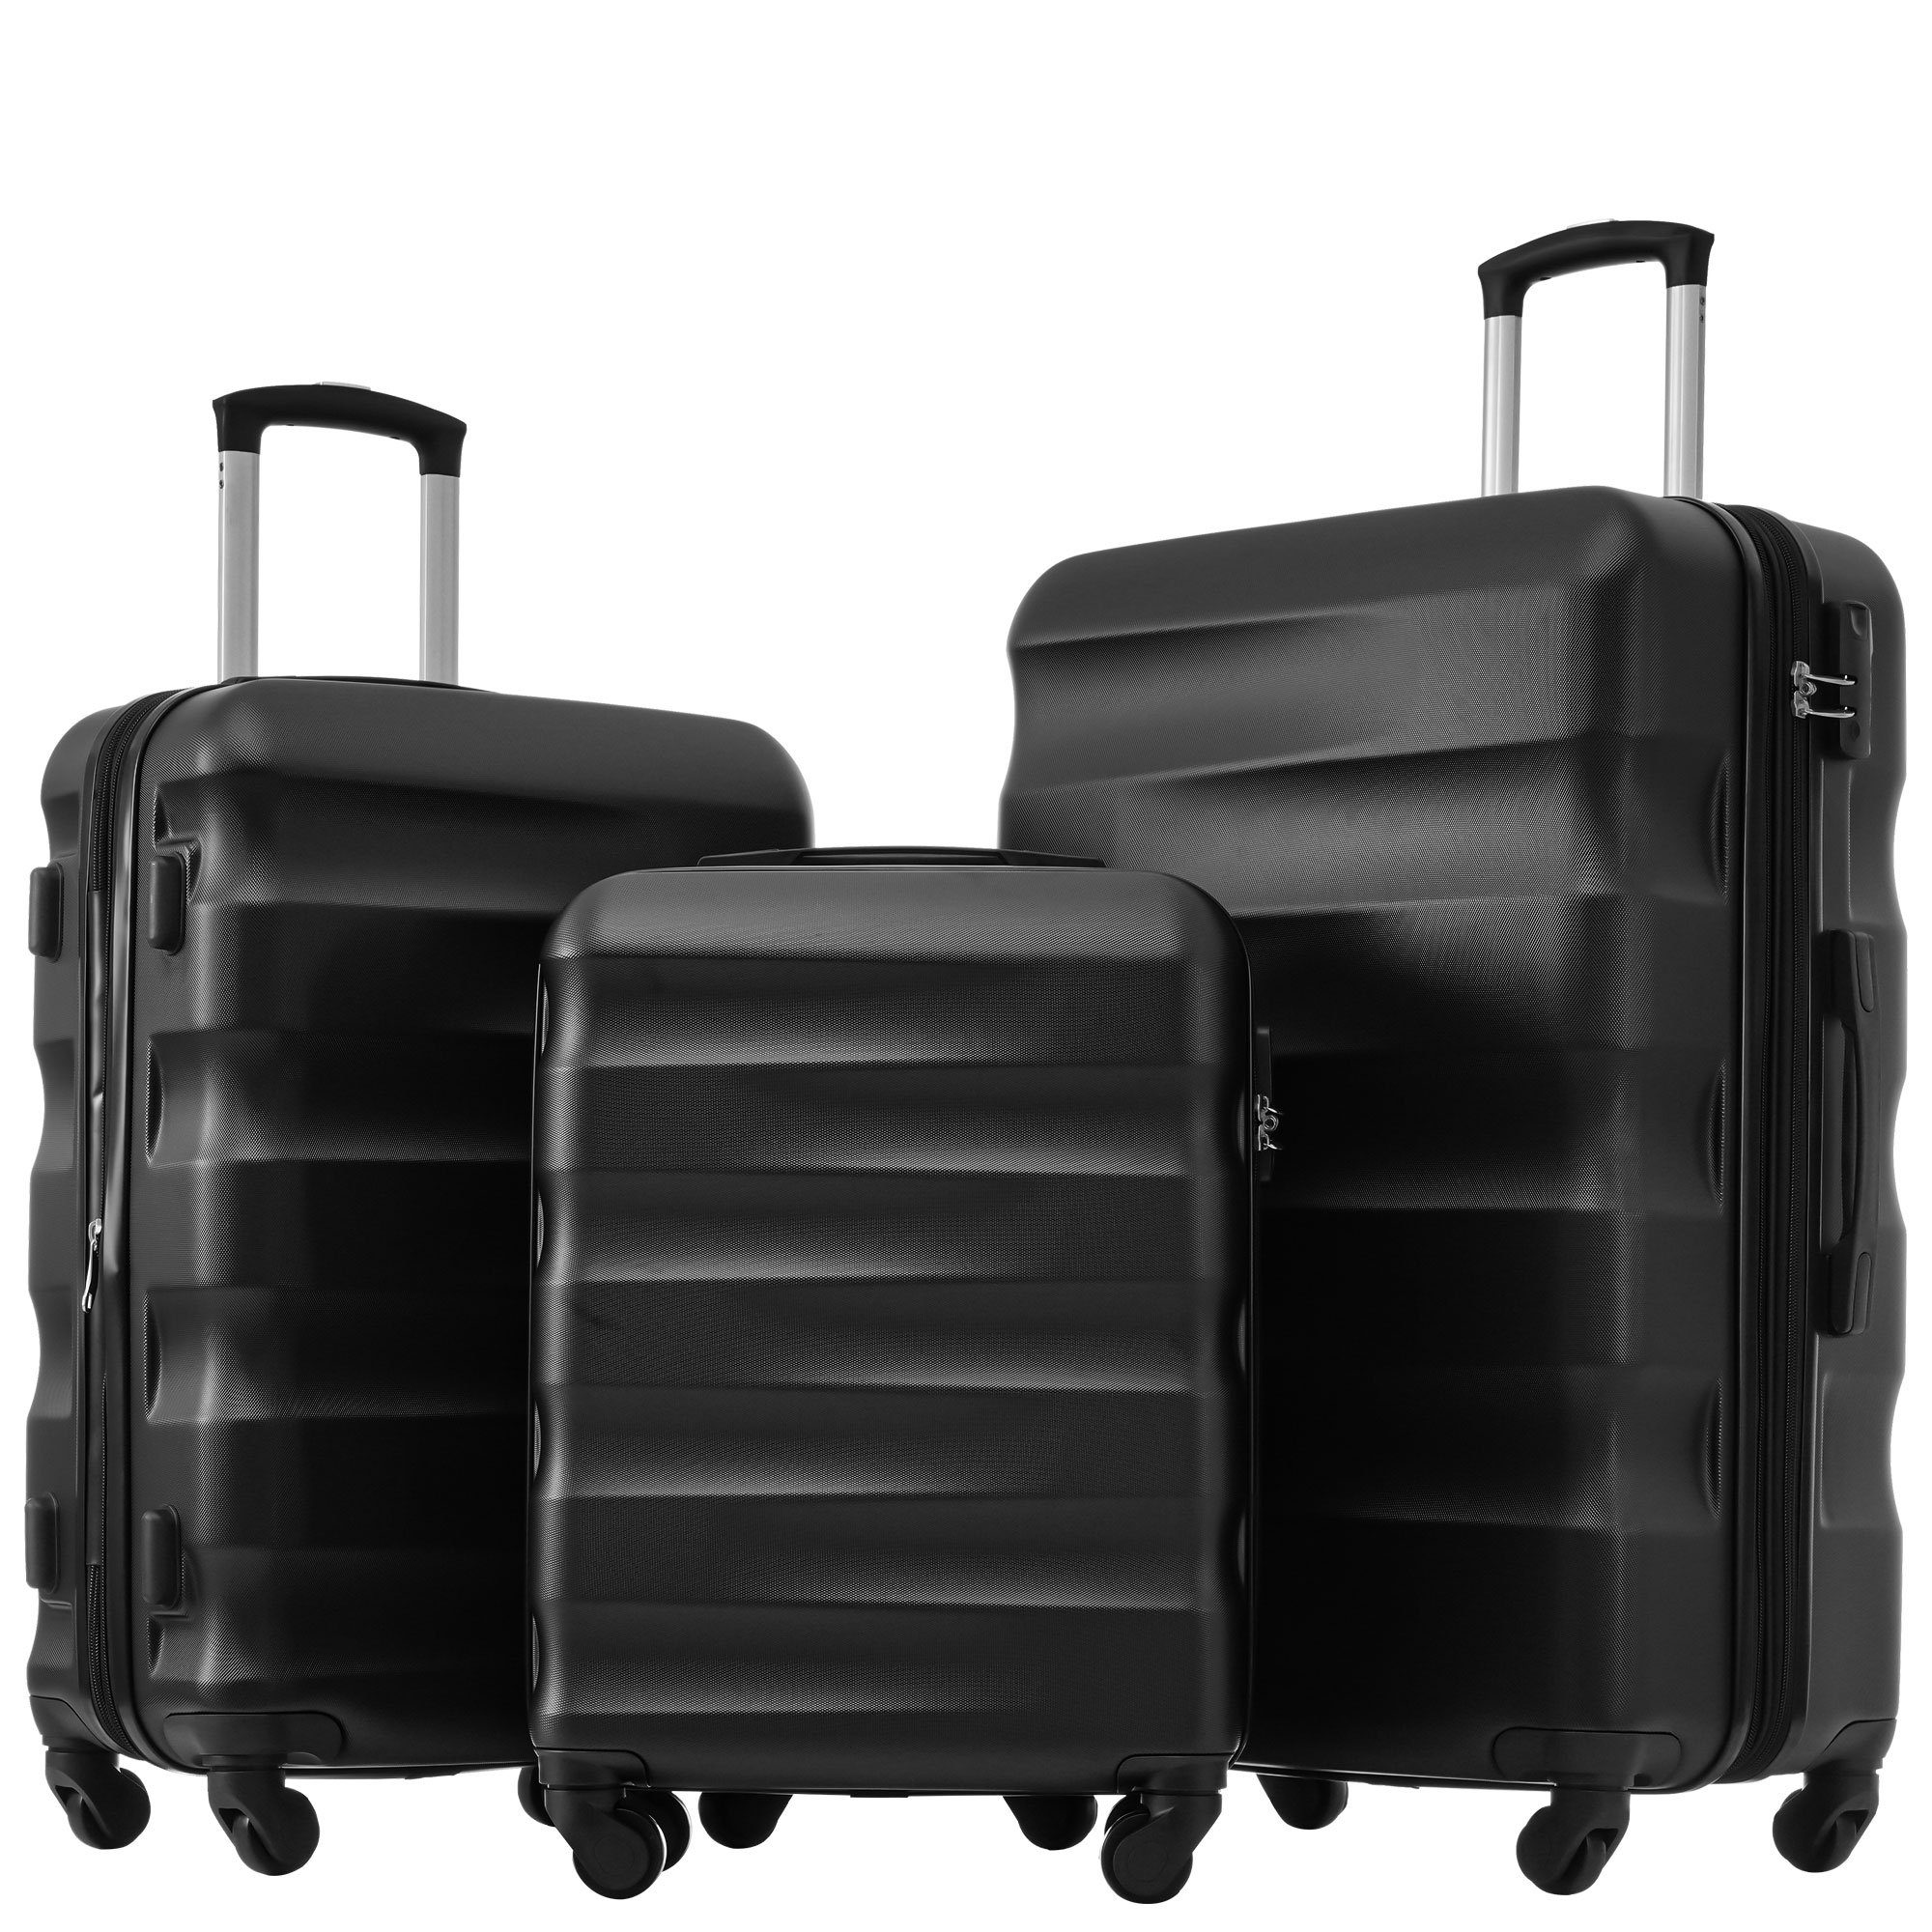 Ulife Trolleyset Kofferset Reisekoffer ABS-Material, TSA Zollschloss, 360° -Räder, 4 Rollen, (3 tlg) Schwarz